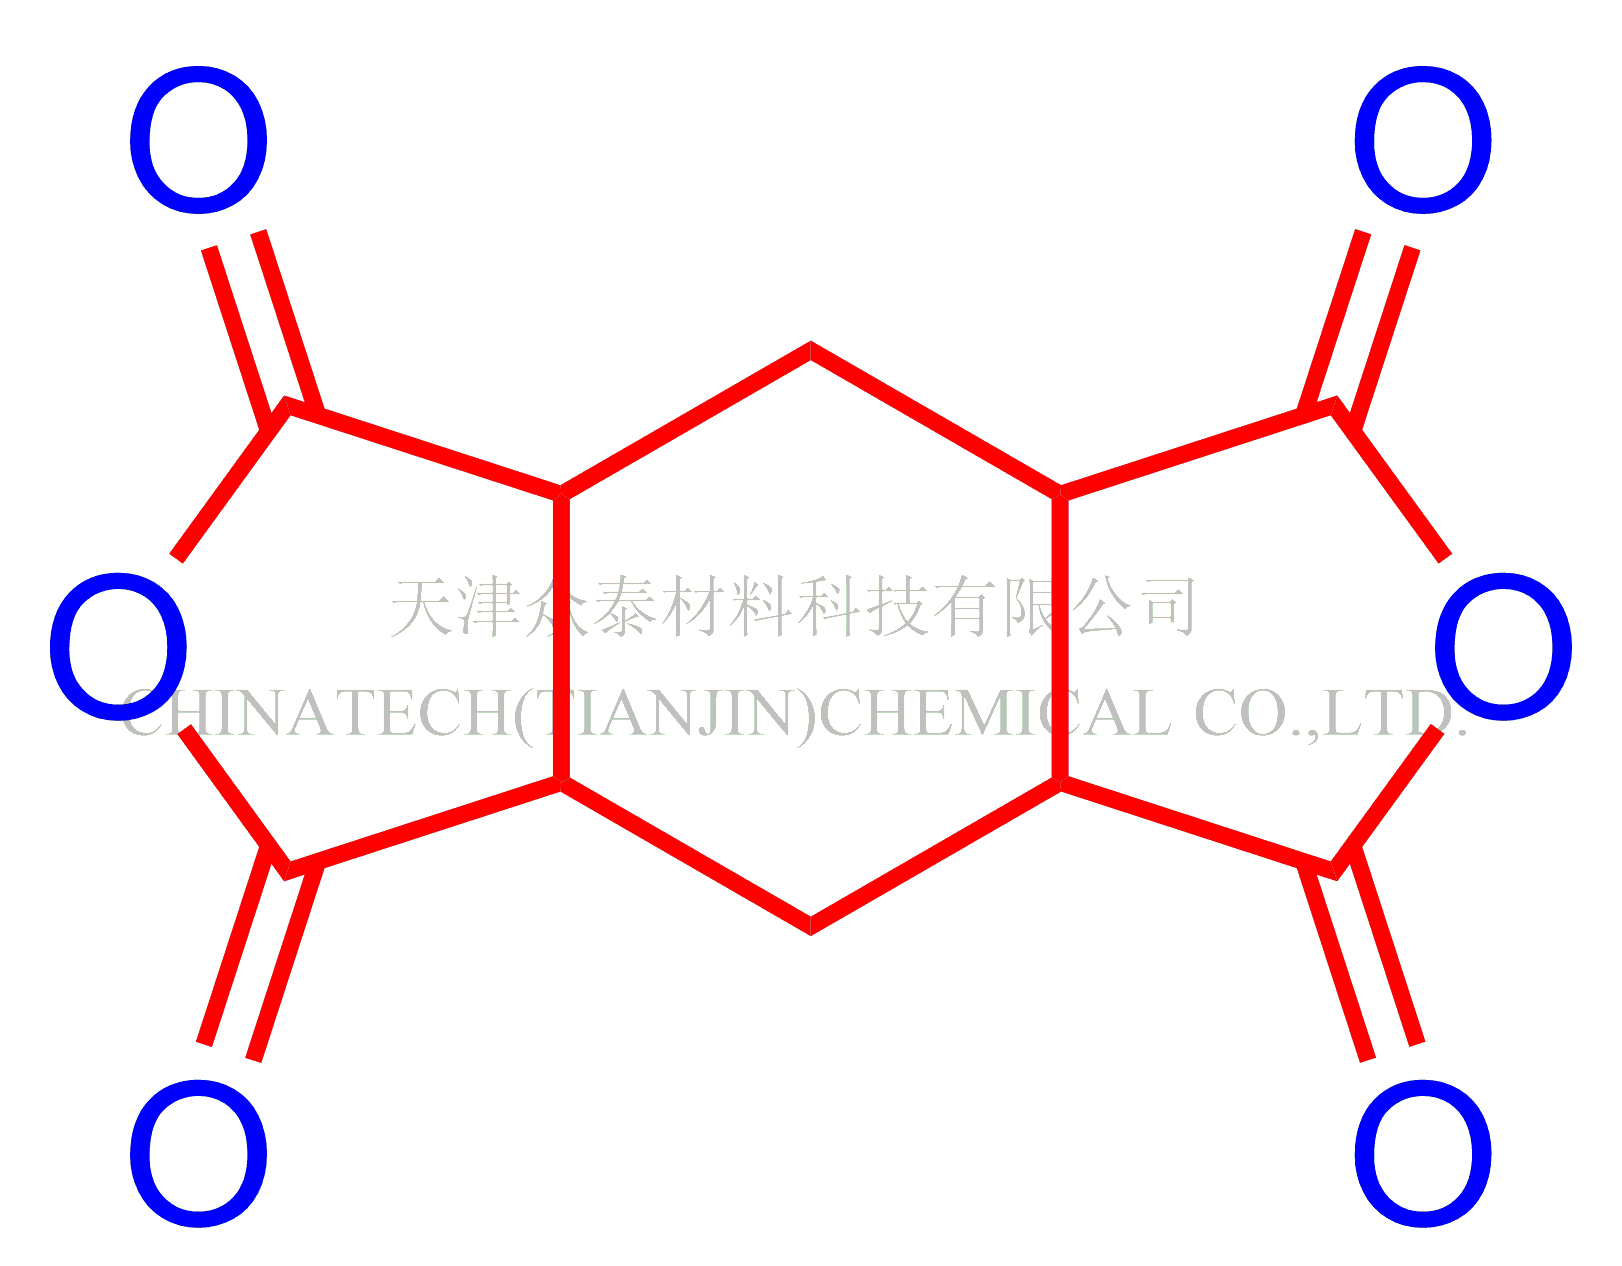 氢化均苯四甲酸二酐(HPMDA）